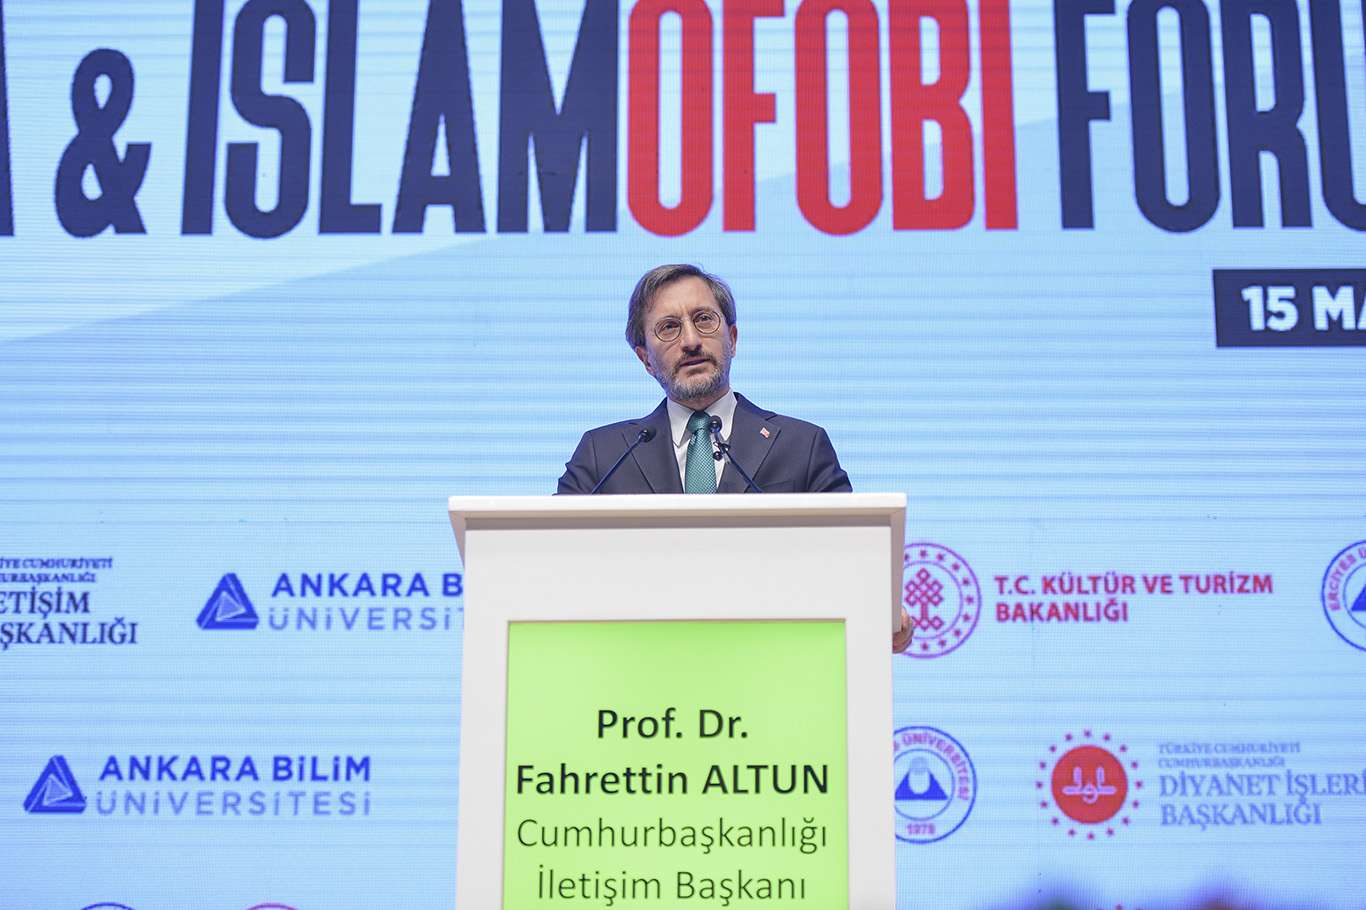 İletişim Başkanı Altun: İslam düşmanlığı Avrupada giderek kurumsallaşıyor  